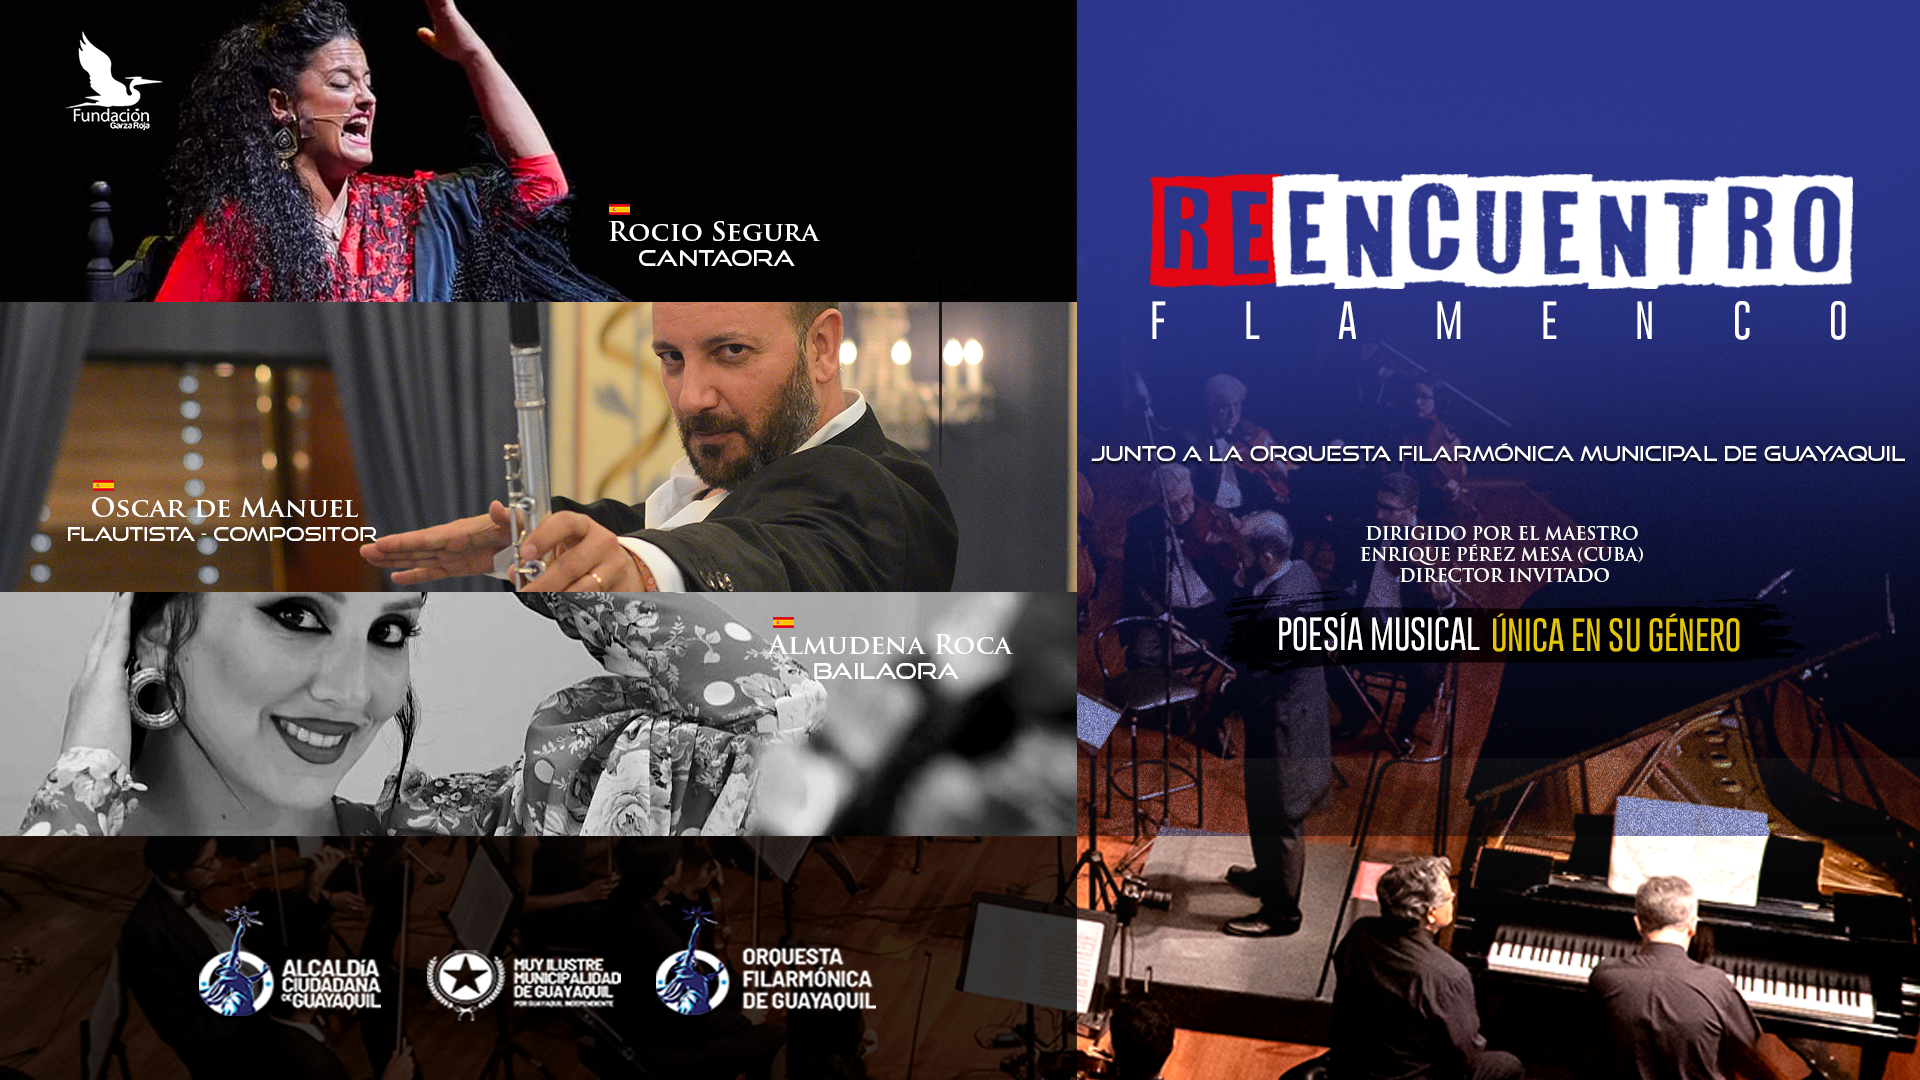 orquesta-filarmonica-municipal-guayaquil-presenta-reencuentro-flamenco